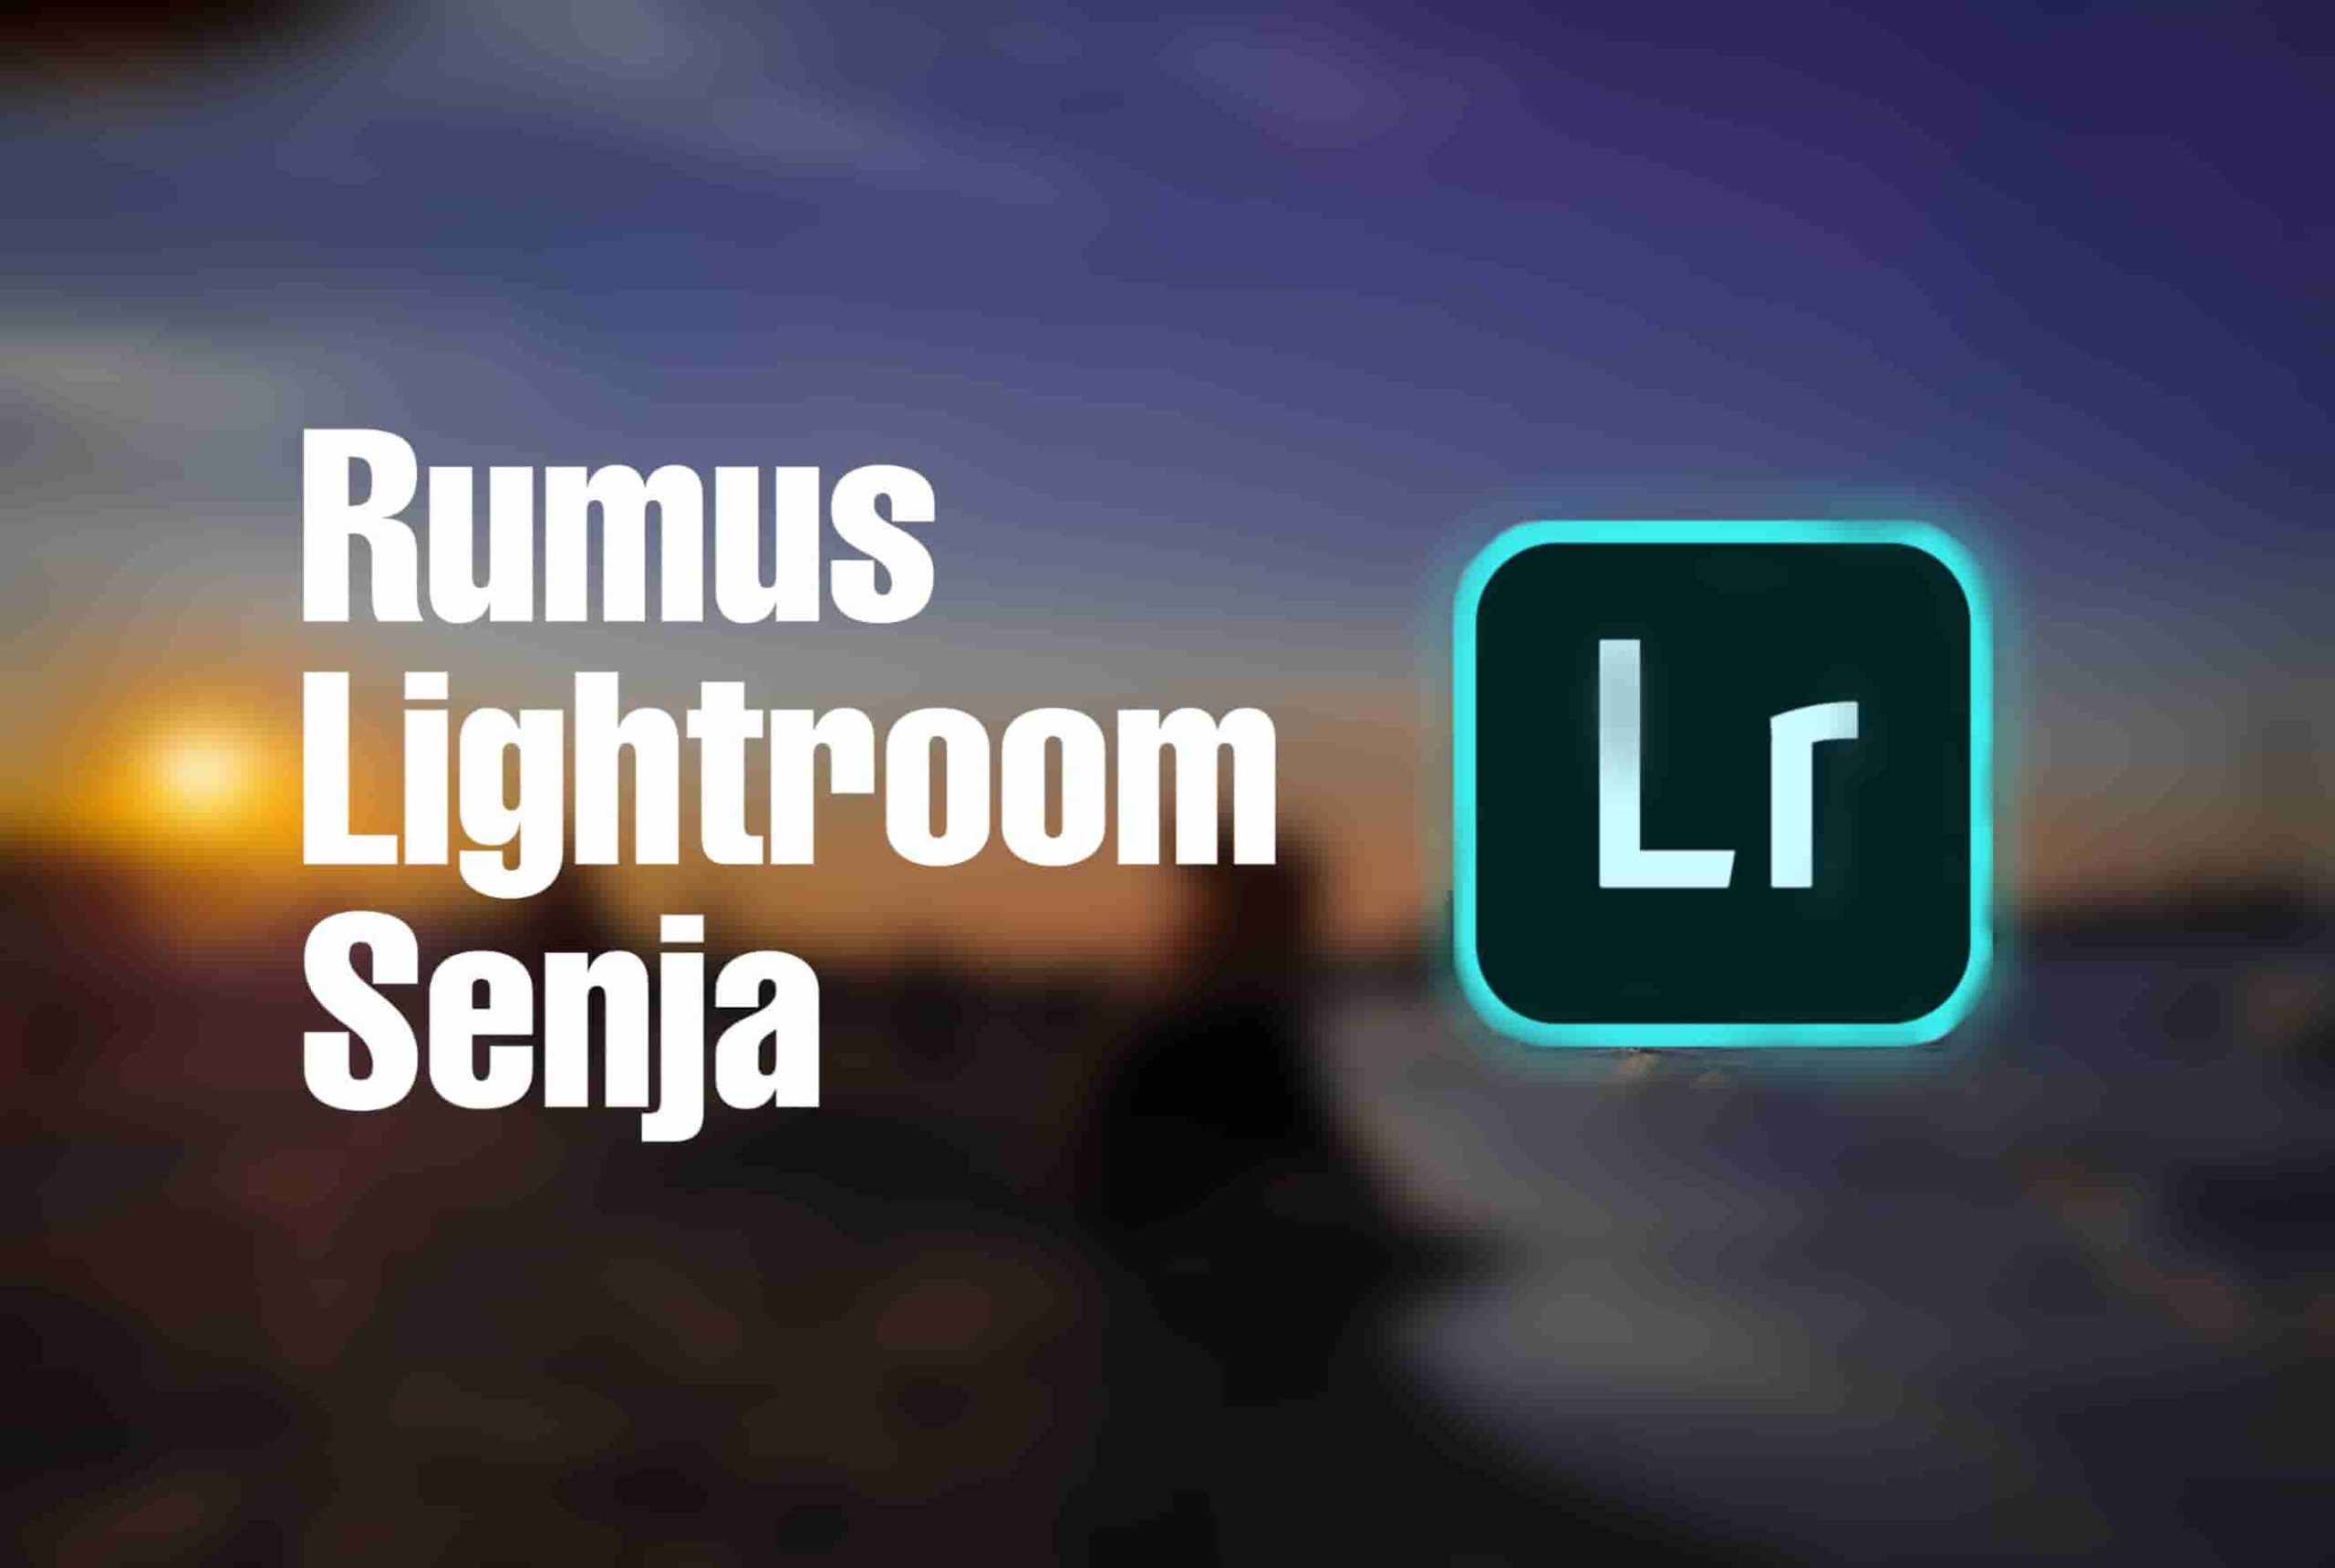 Rumus Lightroom Senja